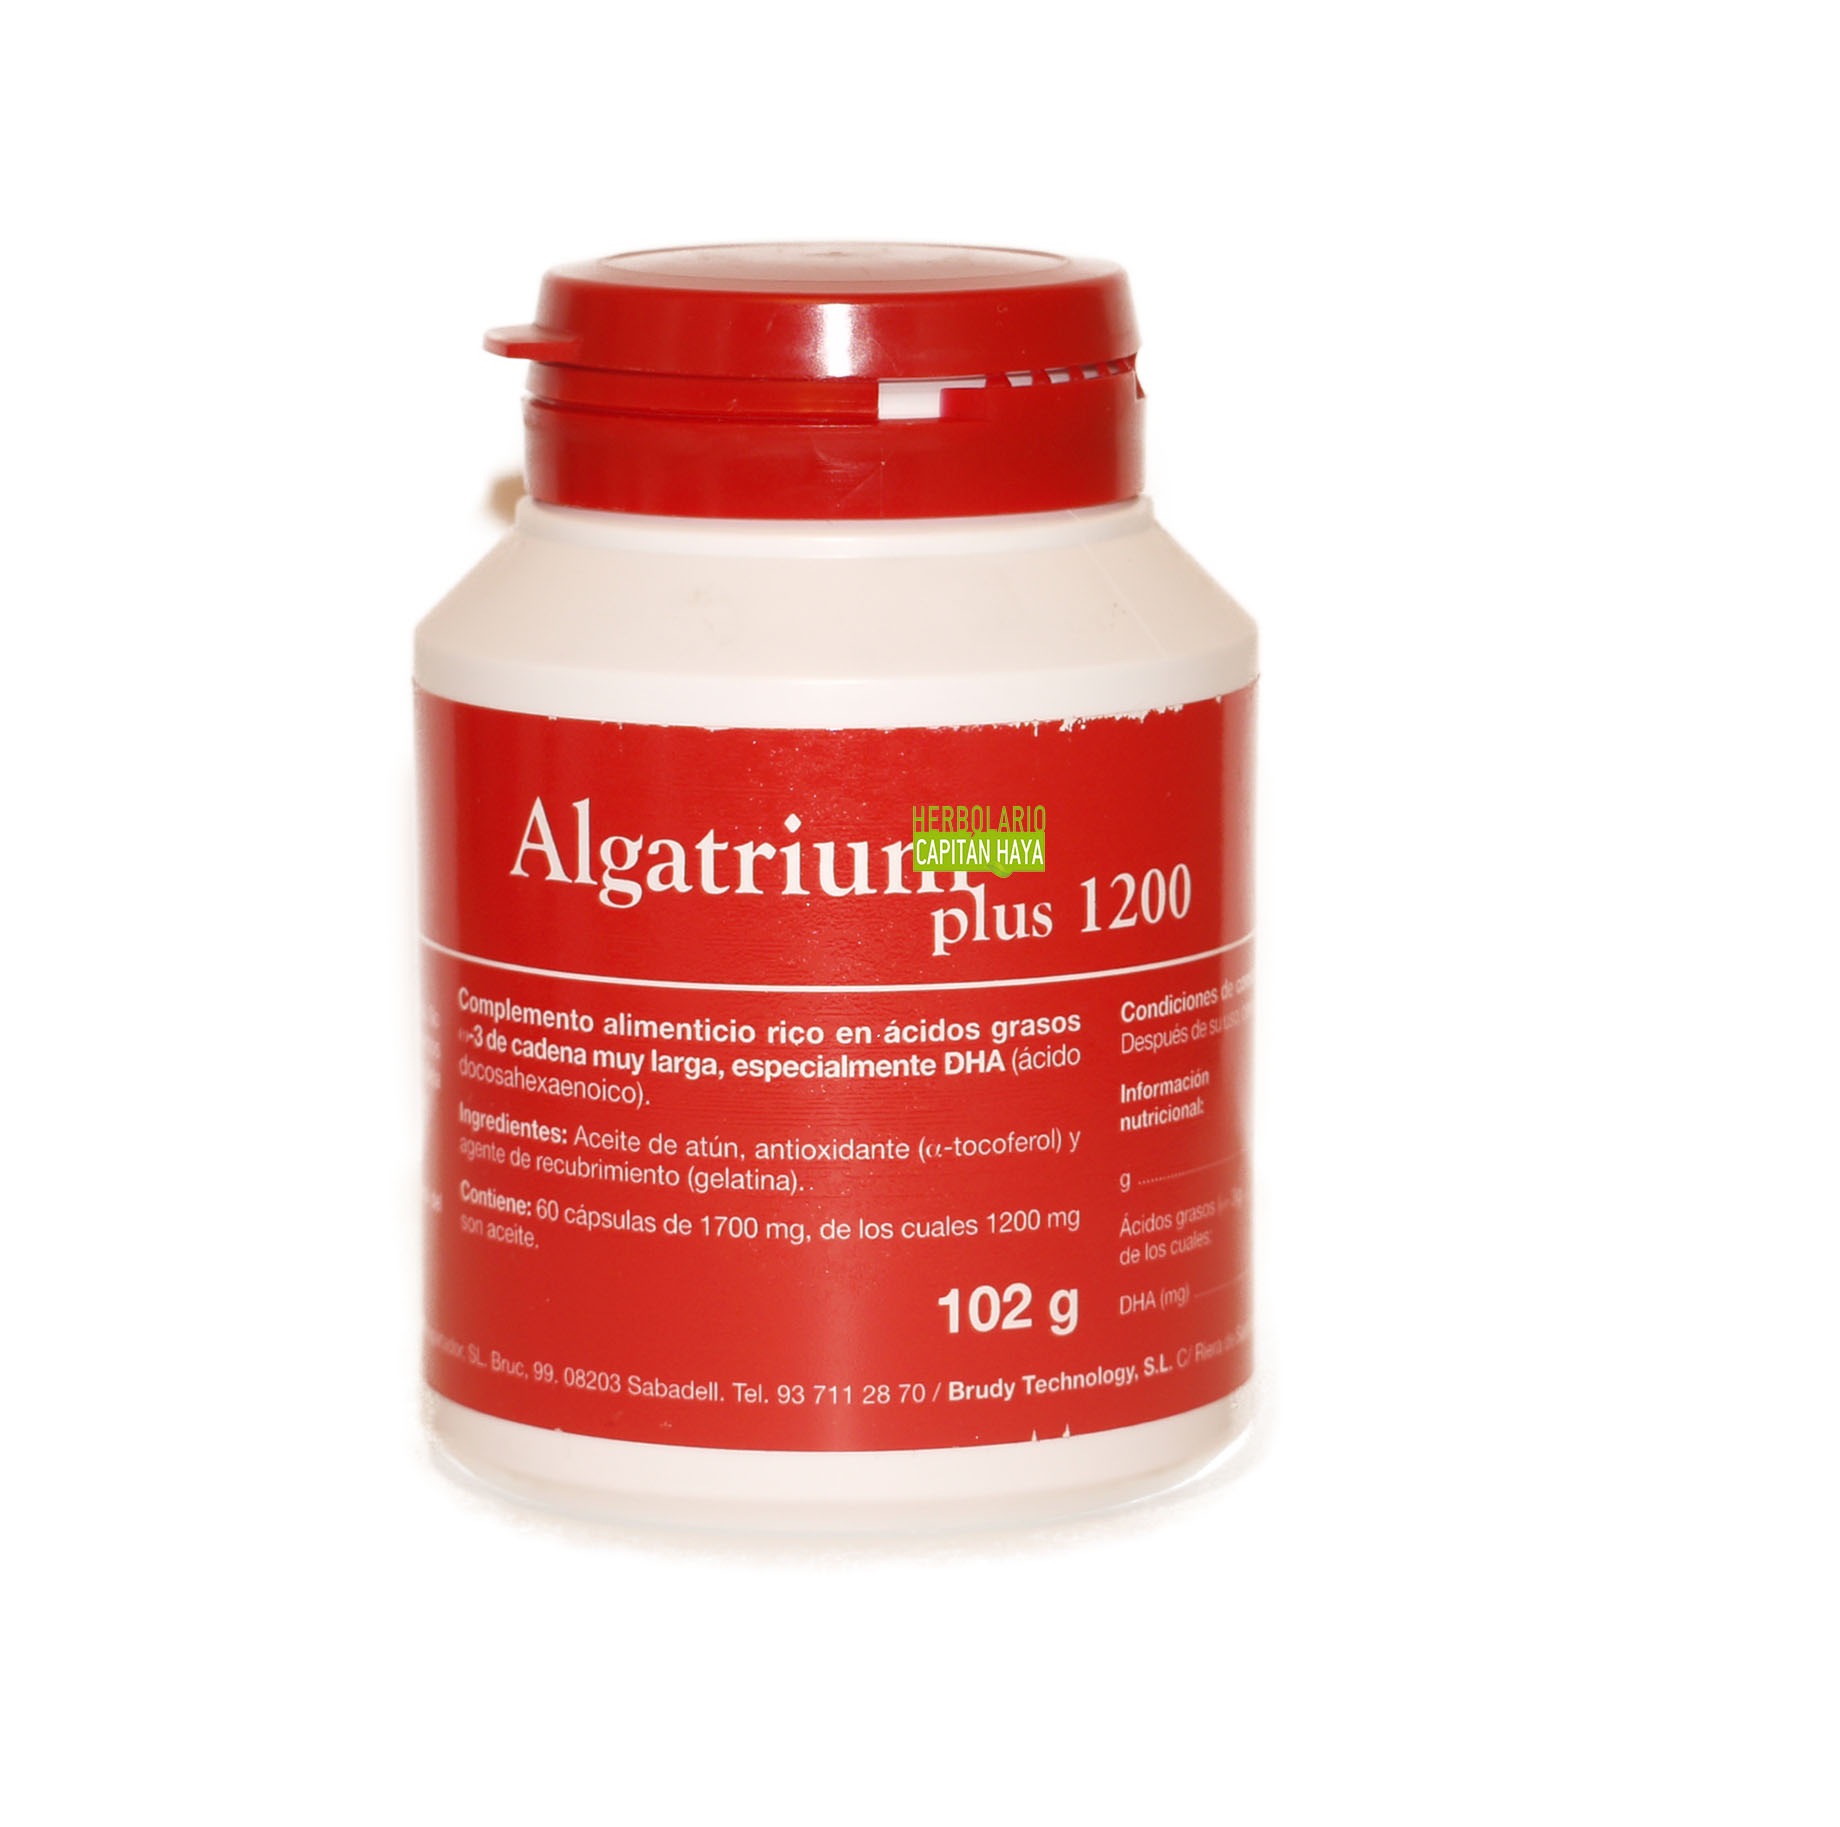 Comprar Algatrium Plus en Gran Farmacia Andorra 1200 60 es beneficioso para los ojos y mejorar la visión y para el sistema nervioso se emplea para combatir las situaciones de depresión.